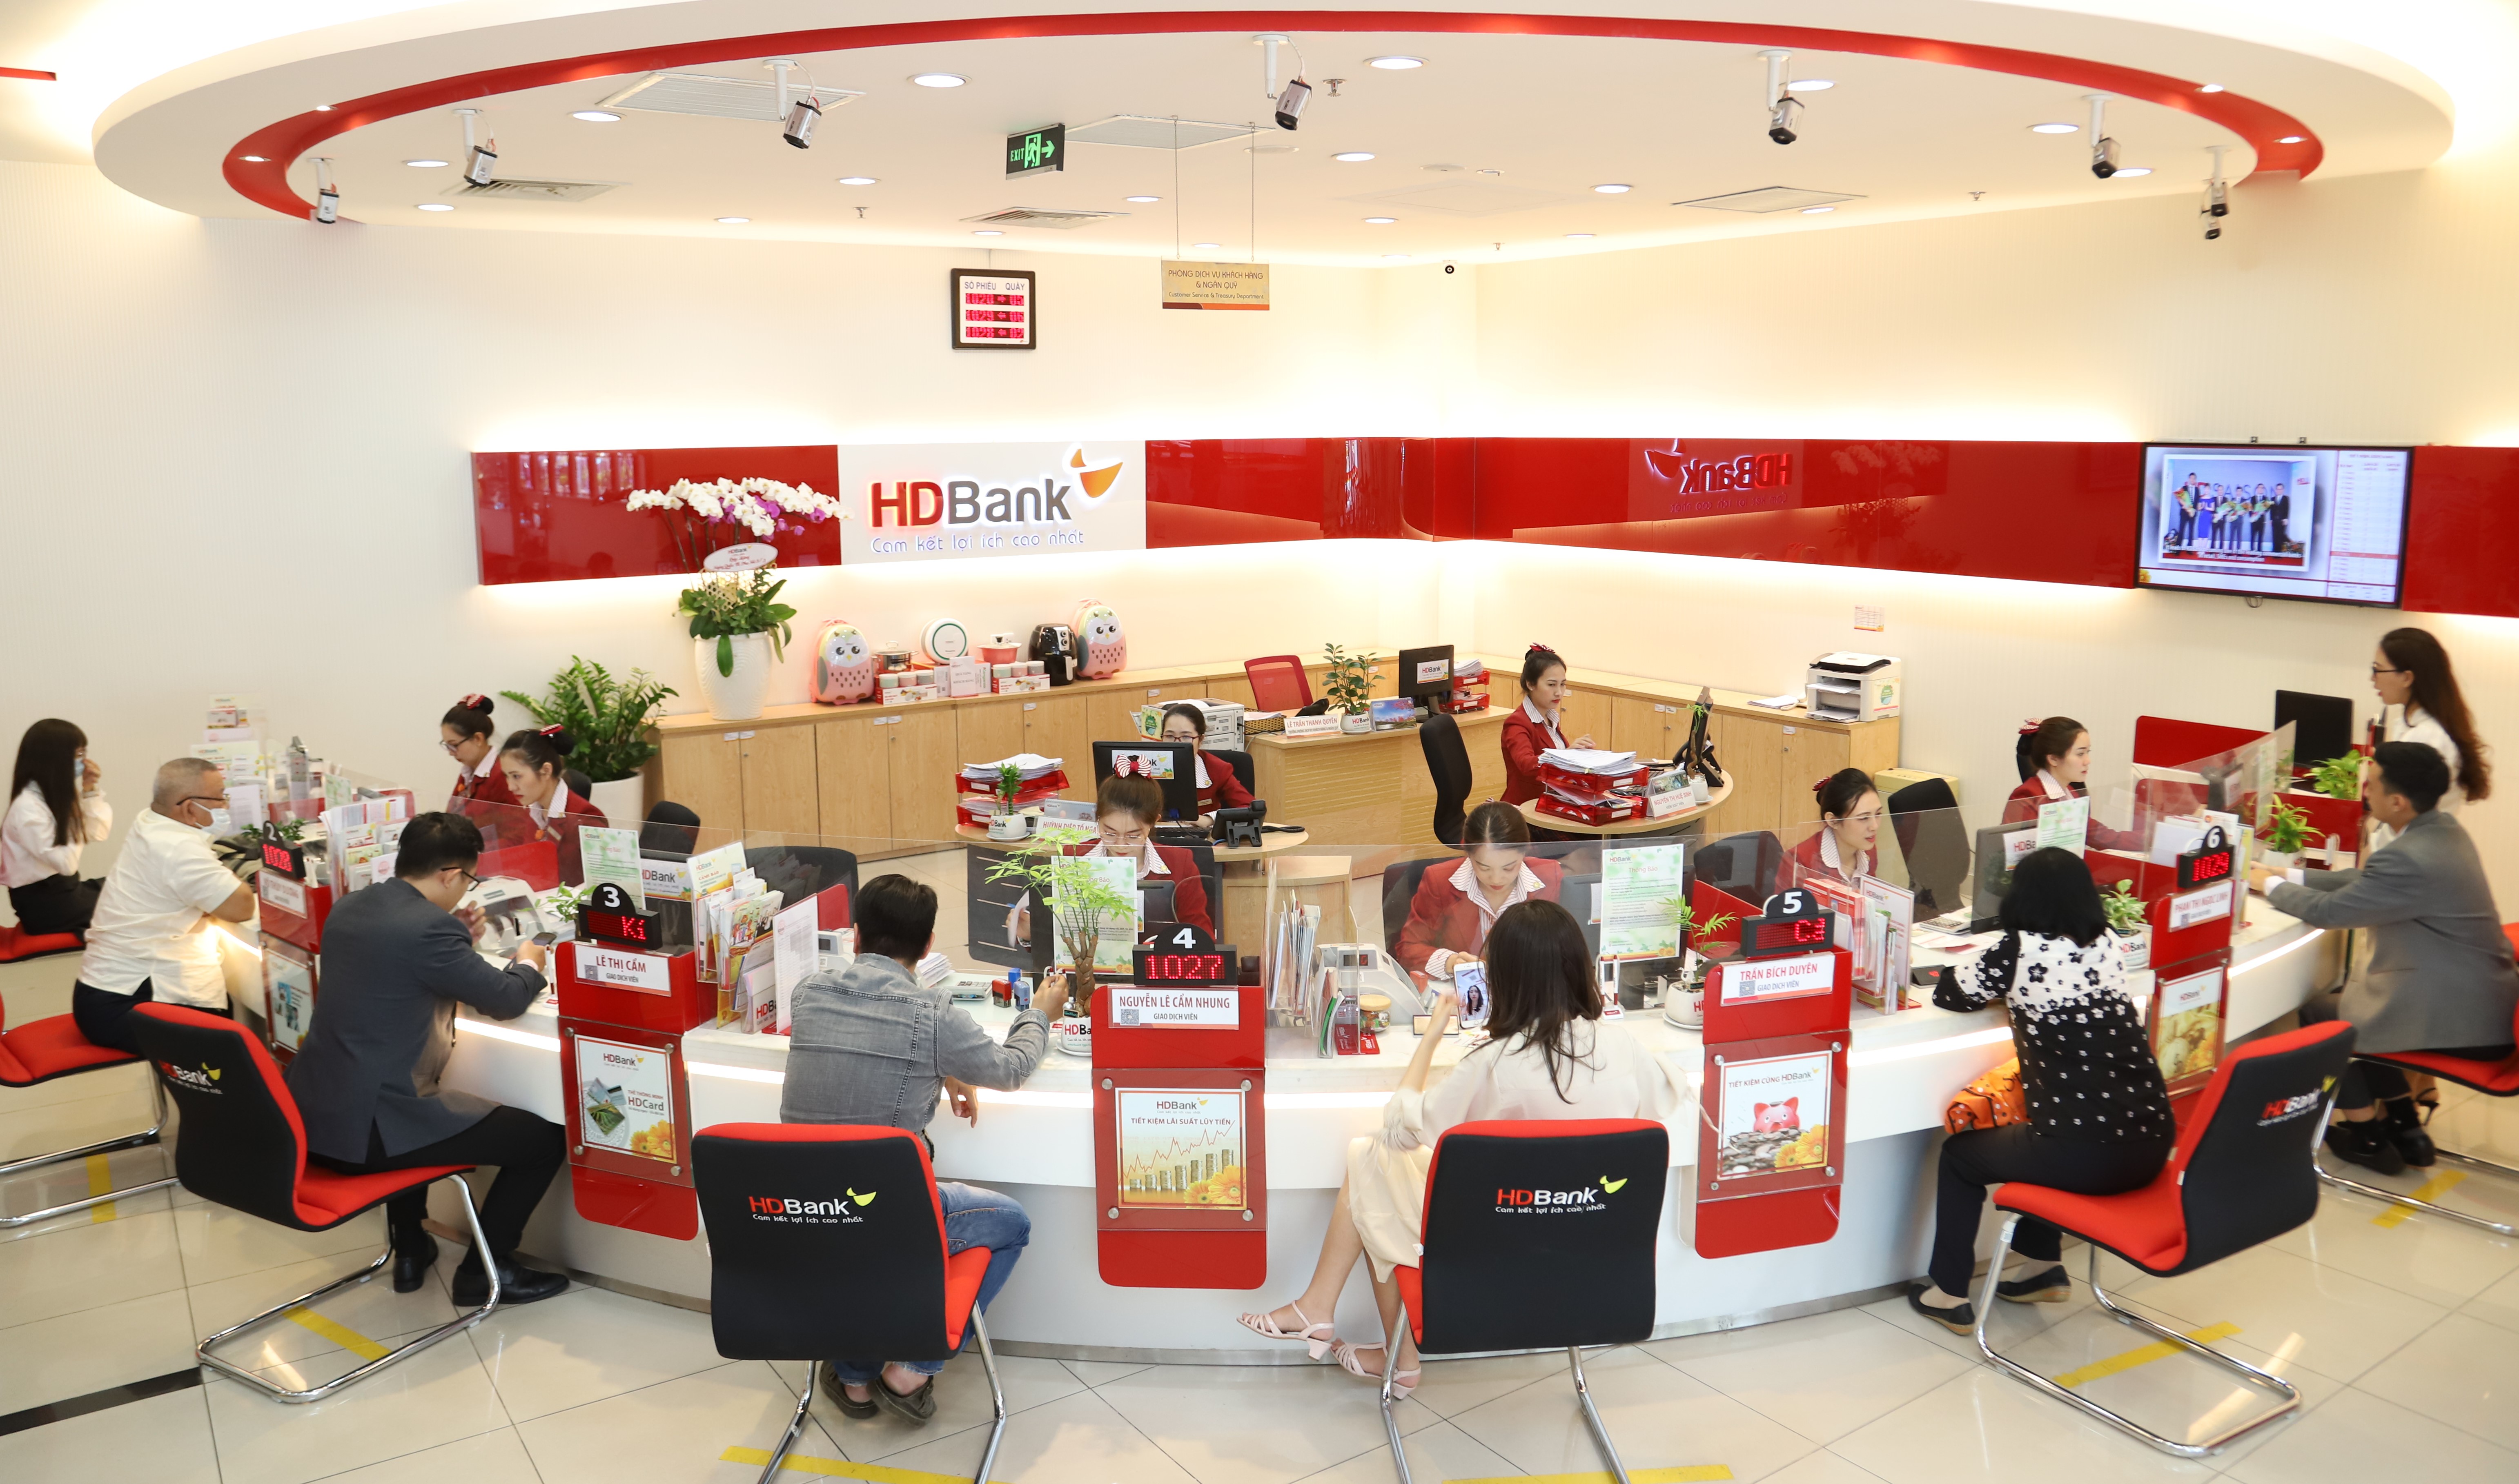 Nhìn vào hình ảnh của HDBank, bạn sẽ cảm nhận được sự mạnh mẽ, đổi mới và sáng tạo của ngân hàng hàng đầu Việt Nam này. Hãy cùng tìm hiểu thêm về HDBank qua hình ảnh đầy ấn tượng.